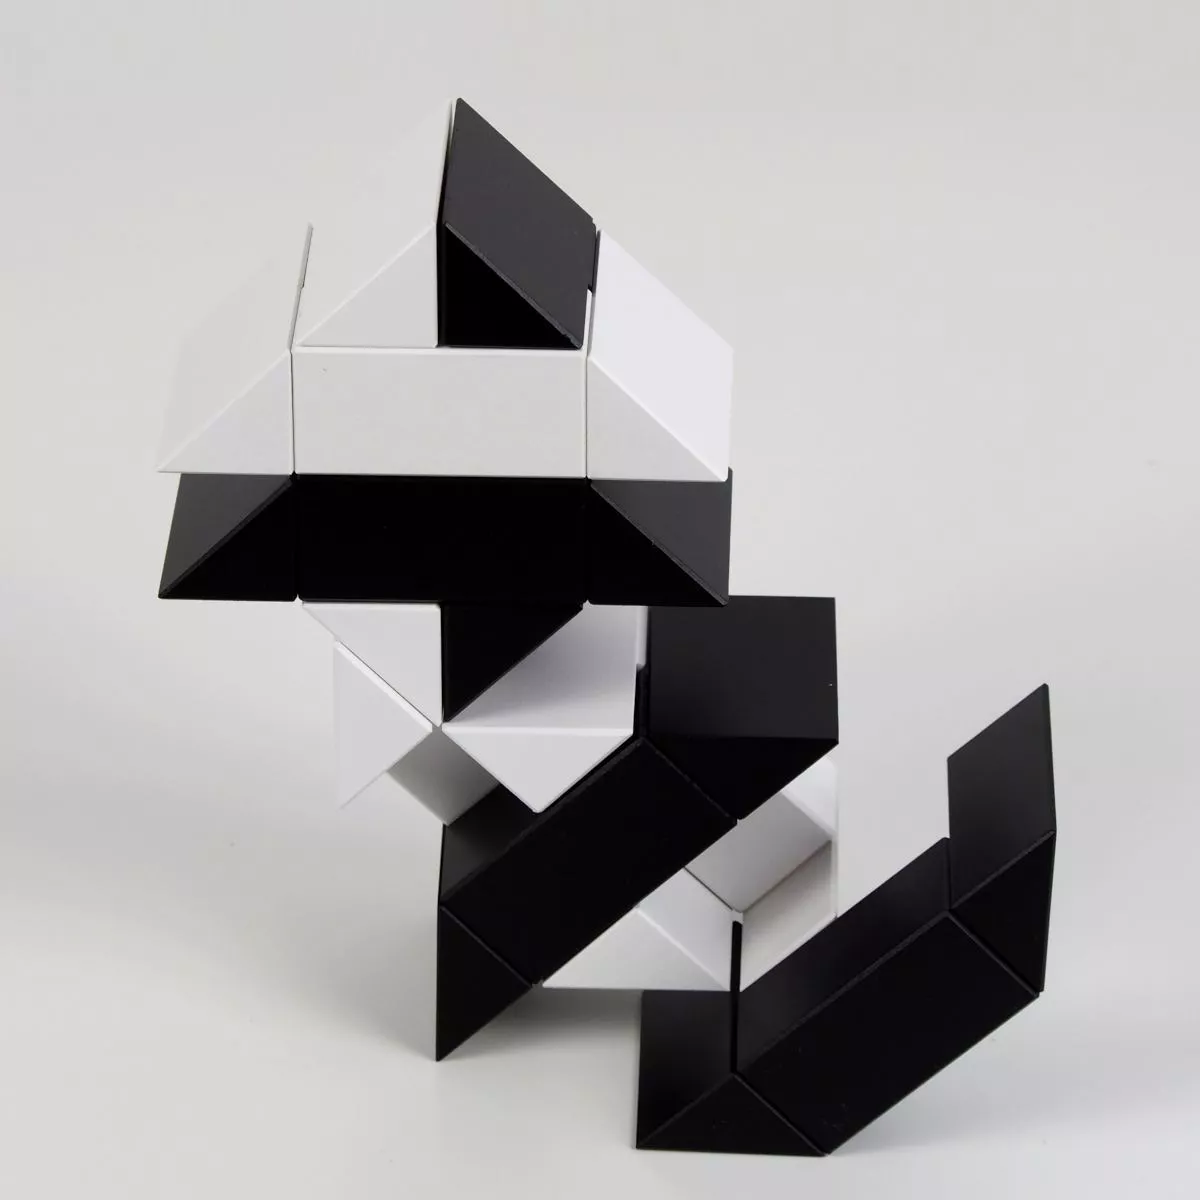 Ponte (Schwarz / Weiß) – Originales Naef-Spiel aus Holz für kreative Konstruktionen